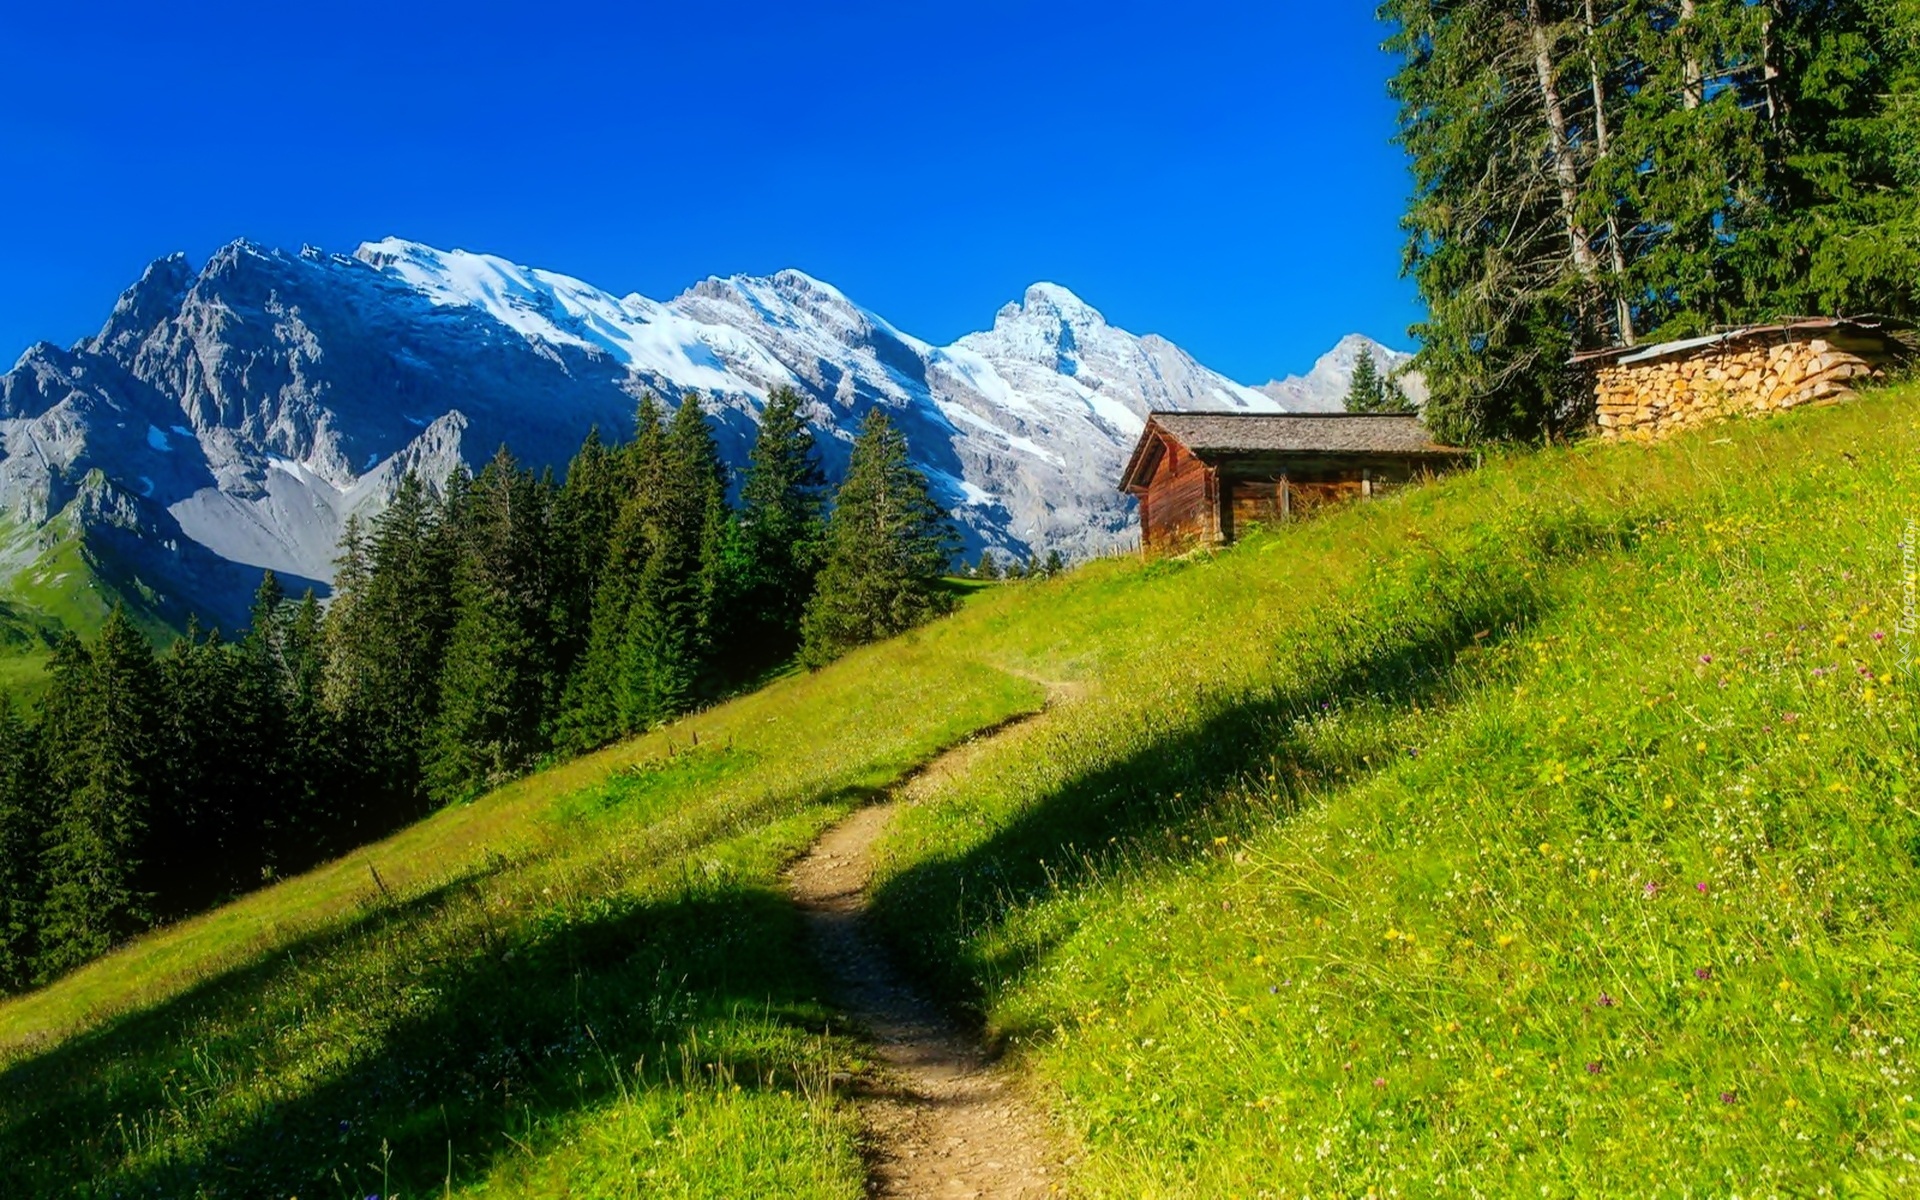 Góry, Alpy Berneńskie, Wengen, Dom, Las, Ścieżka, Szwajcaria